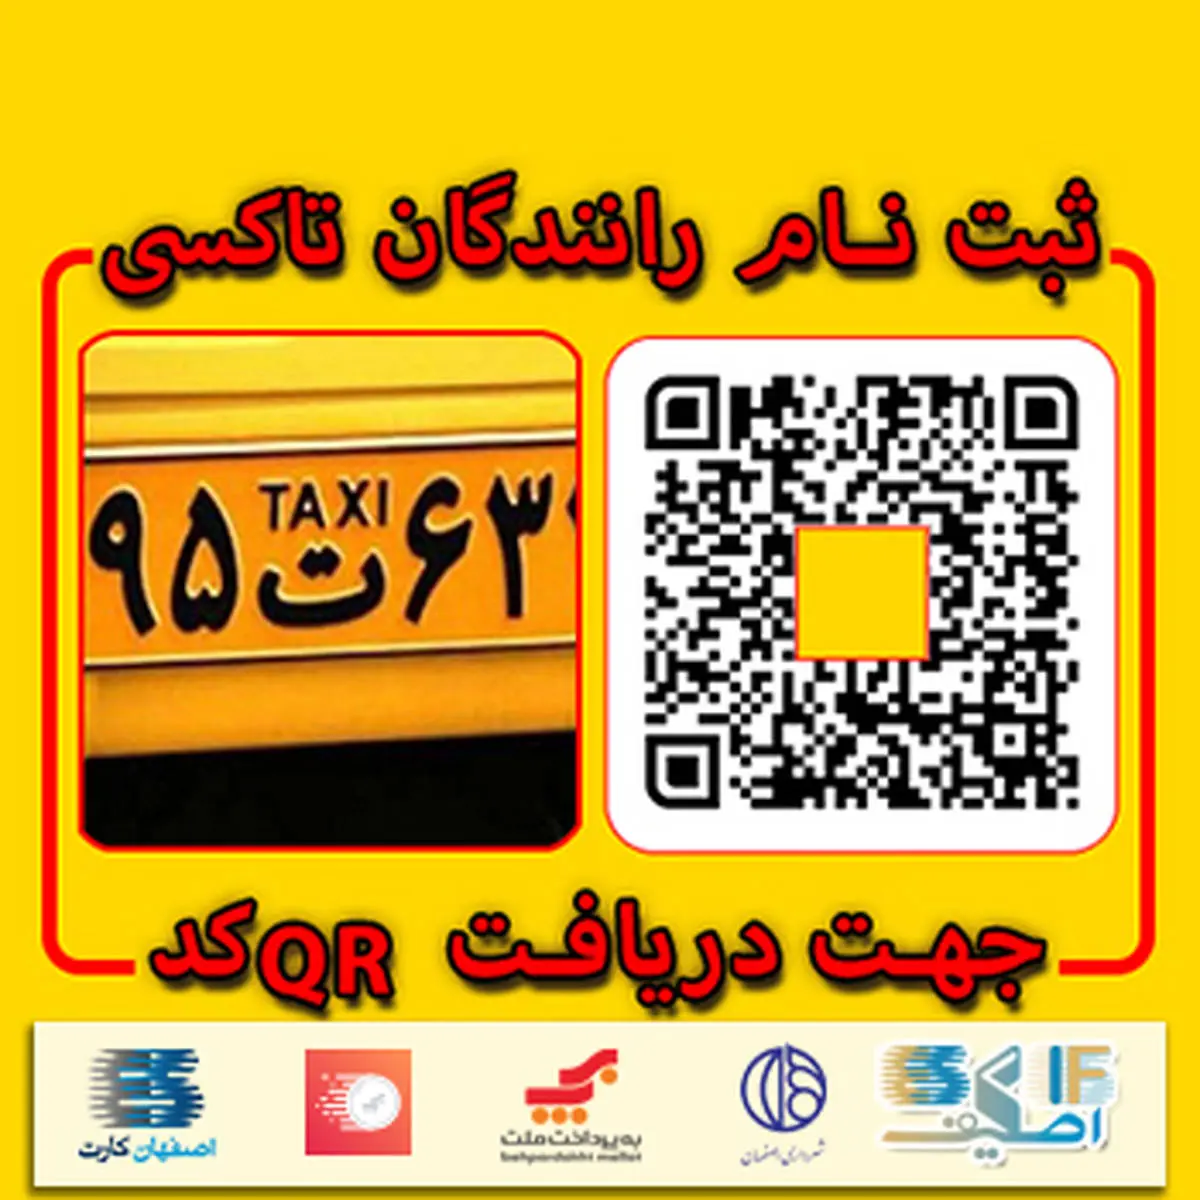 پرداخت کرایه تاکسی در اصفهان بدون نیاز به پول نقد با اپلیکیشین " اصکیف"